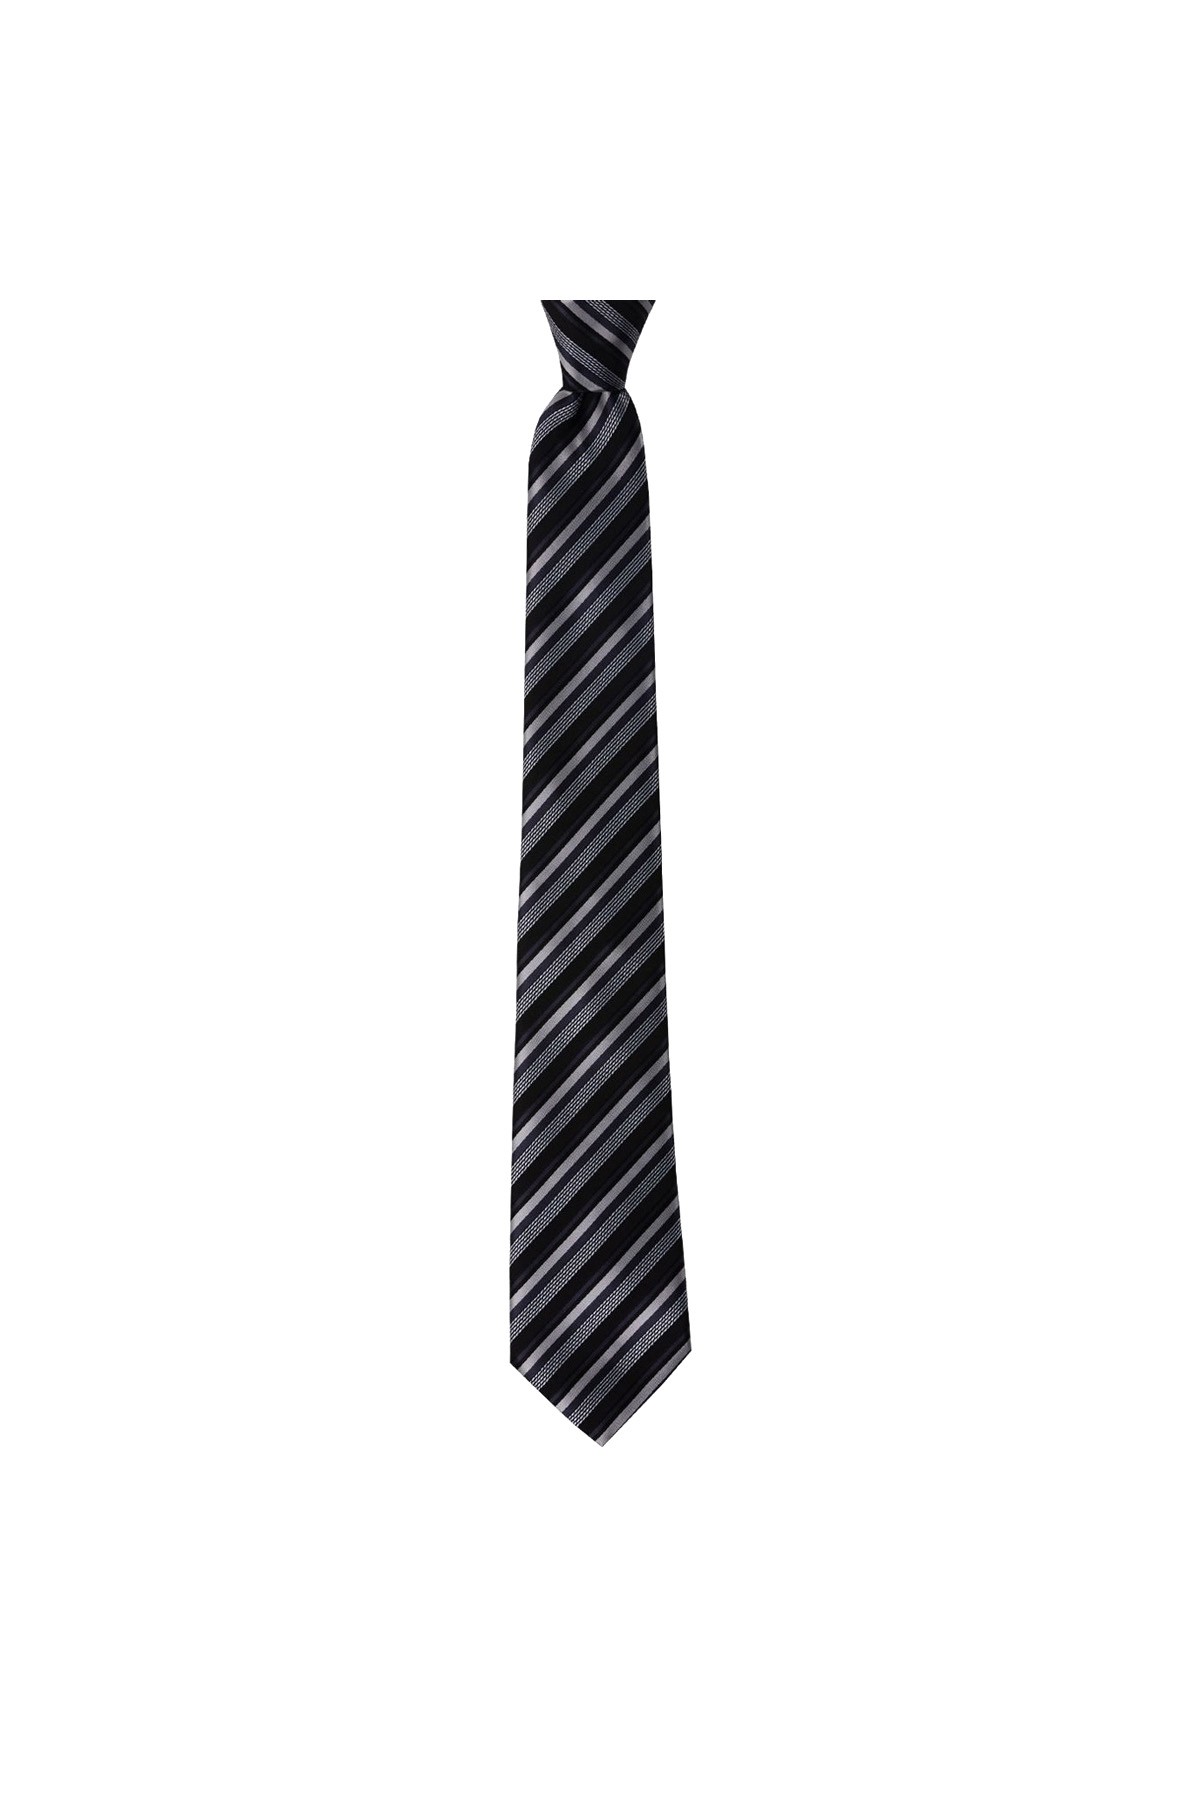 Çok çizgili 8 cm genişliğinde klasik kravat